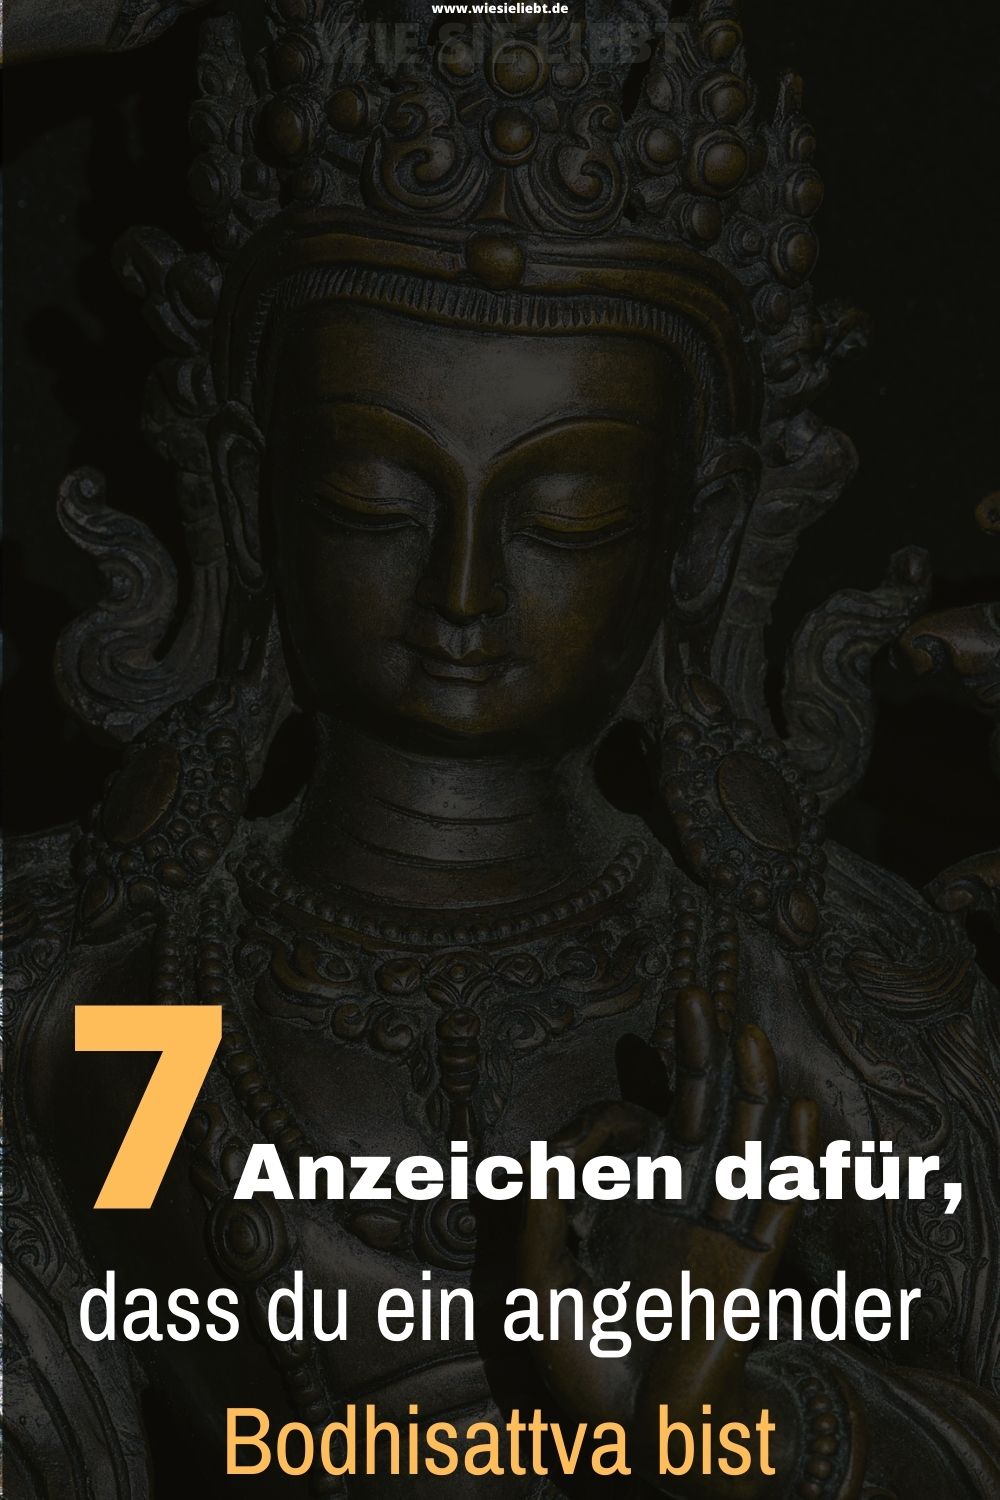 7-Anzeichen-dafuer-dass-du-ein-angehender-Bodhisattva-bist